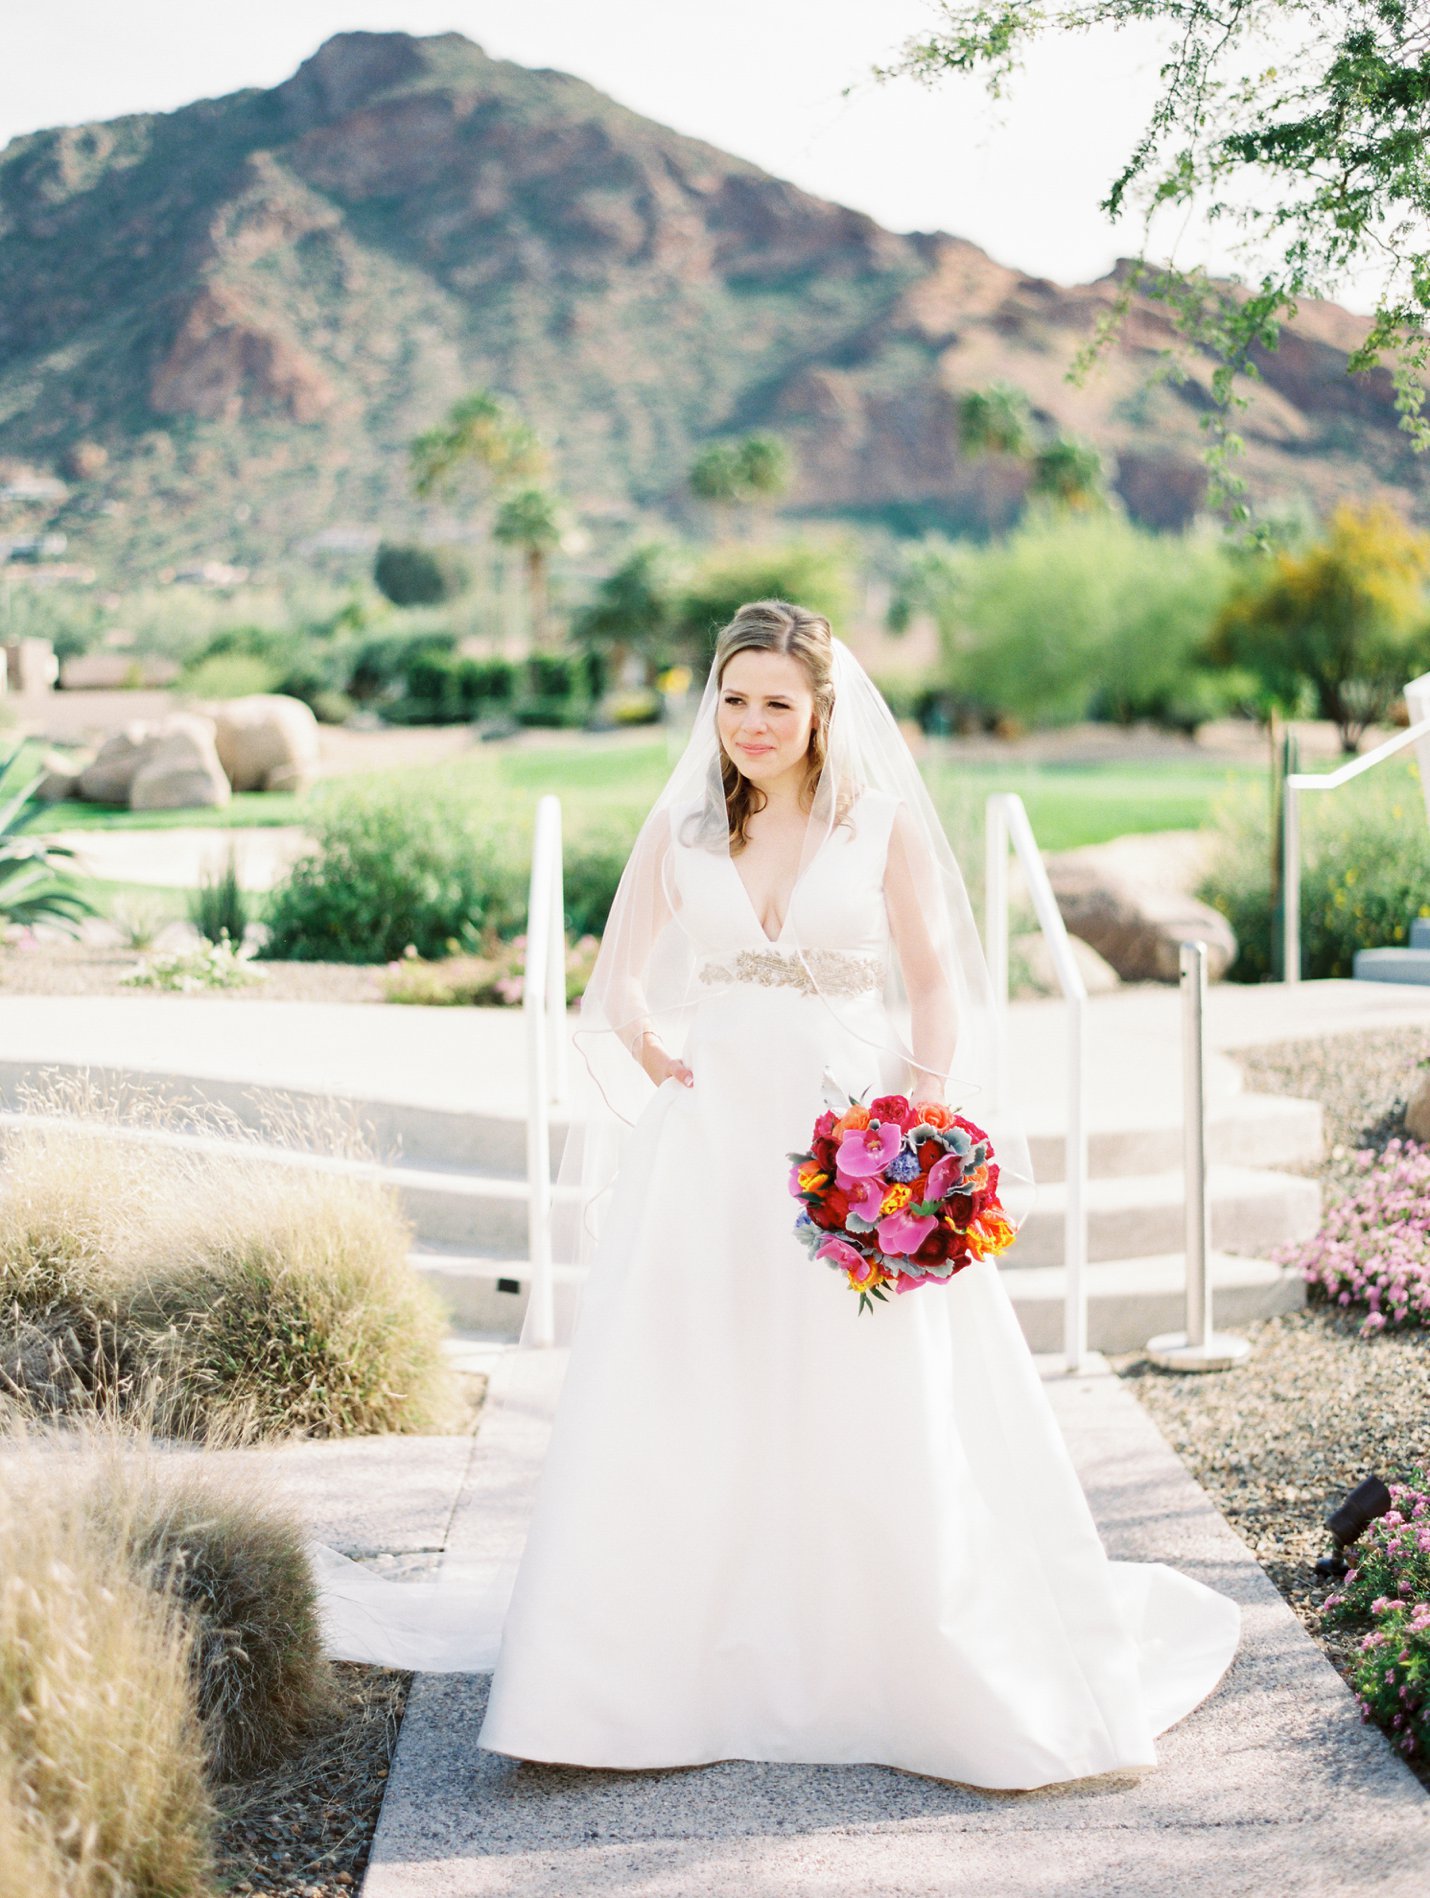 Mountain Shadows wedding - Rachel Solomon Photography